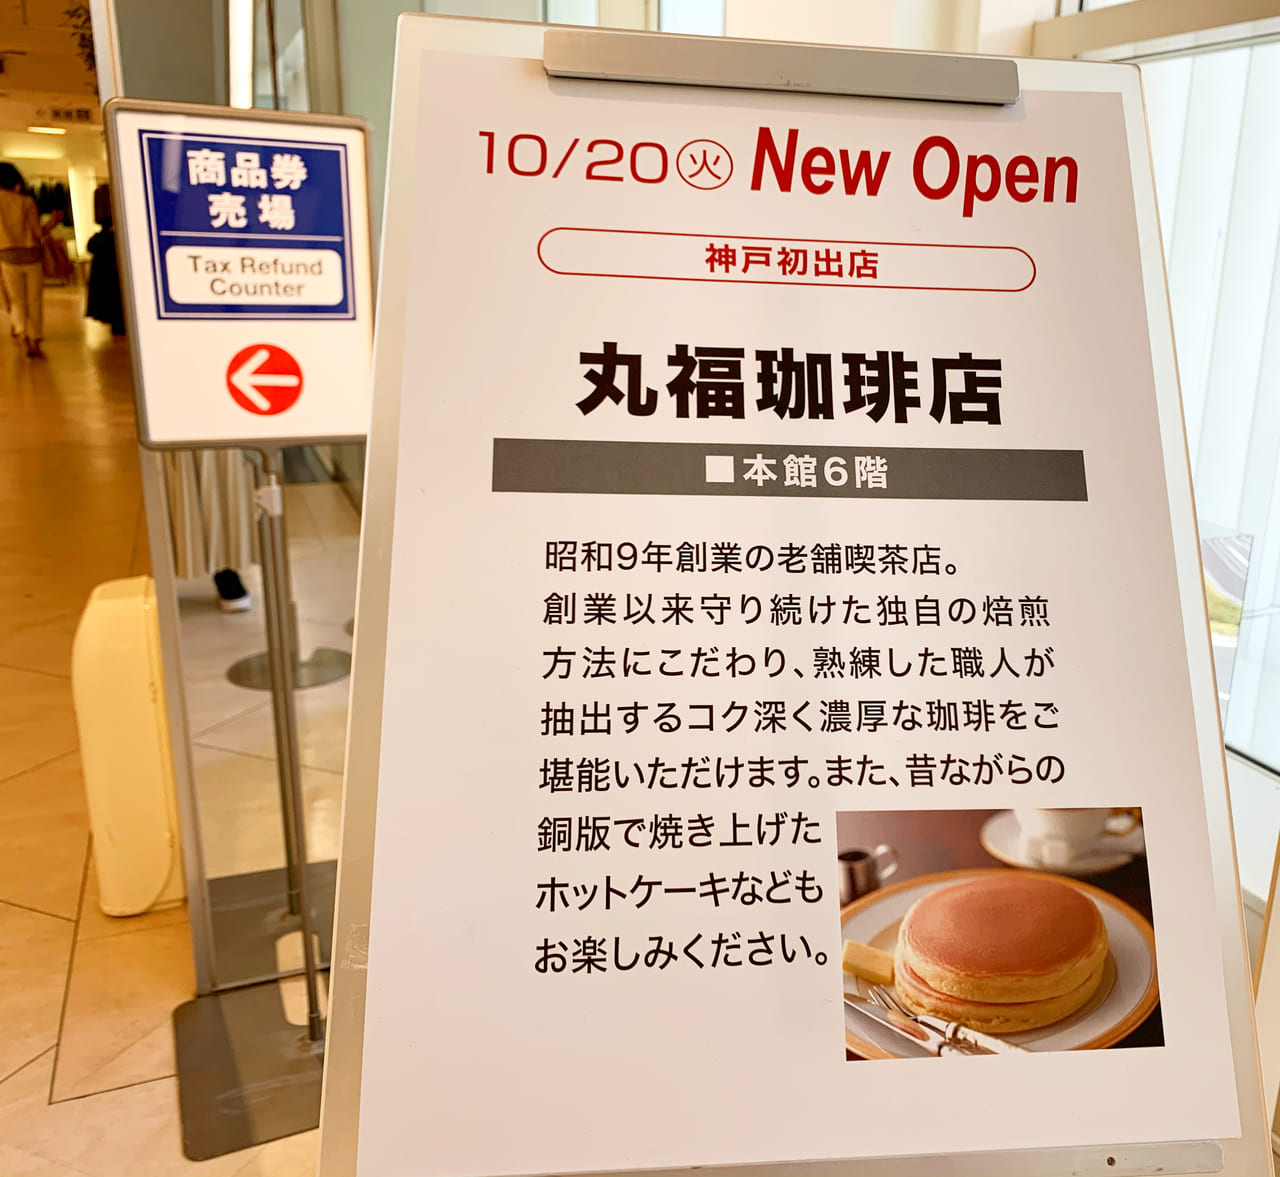 神戸市垂水区 須磨区 神戸阪急の丸福珈琲店がオープンしました プリンがクリーミーで人気です 号外net 神戸市垂水区 須磨区